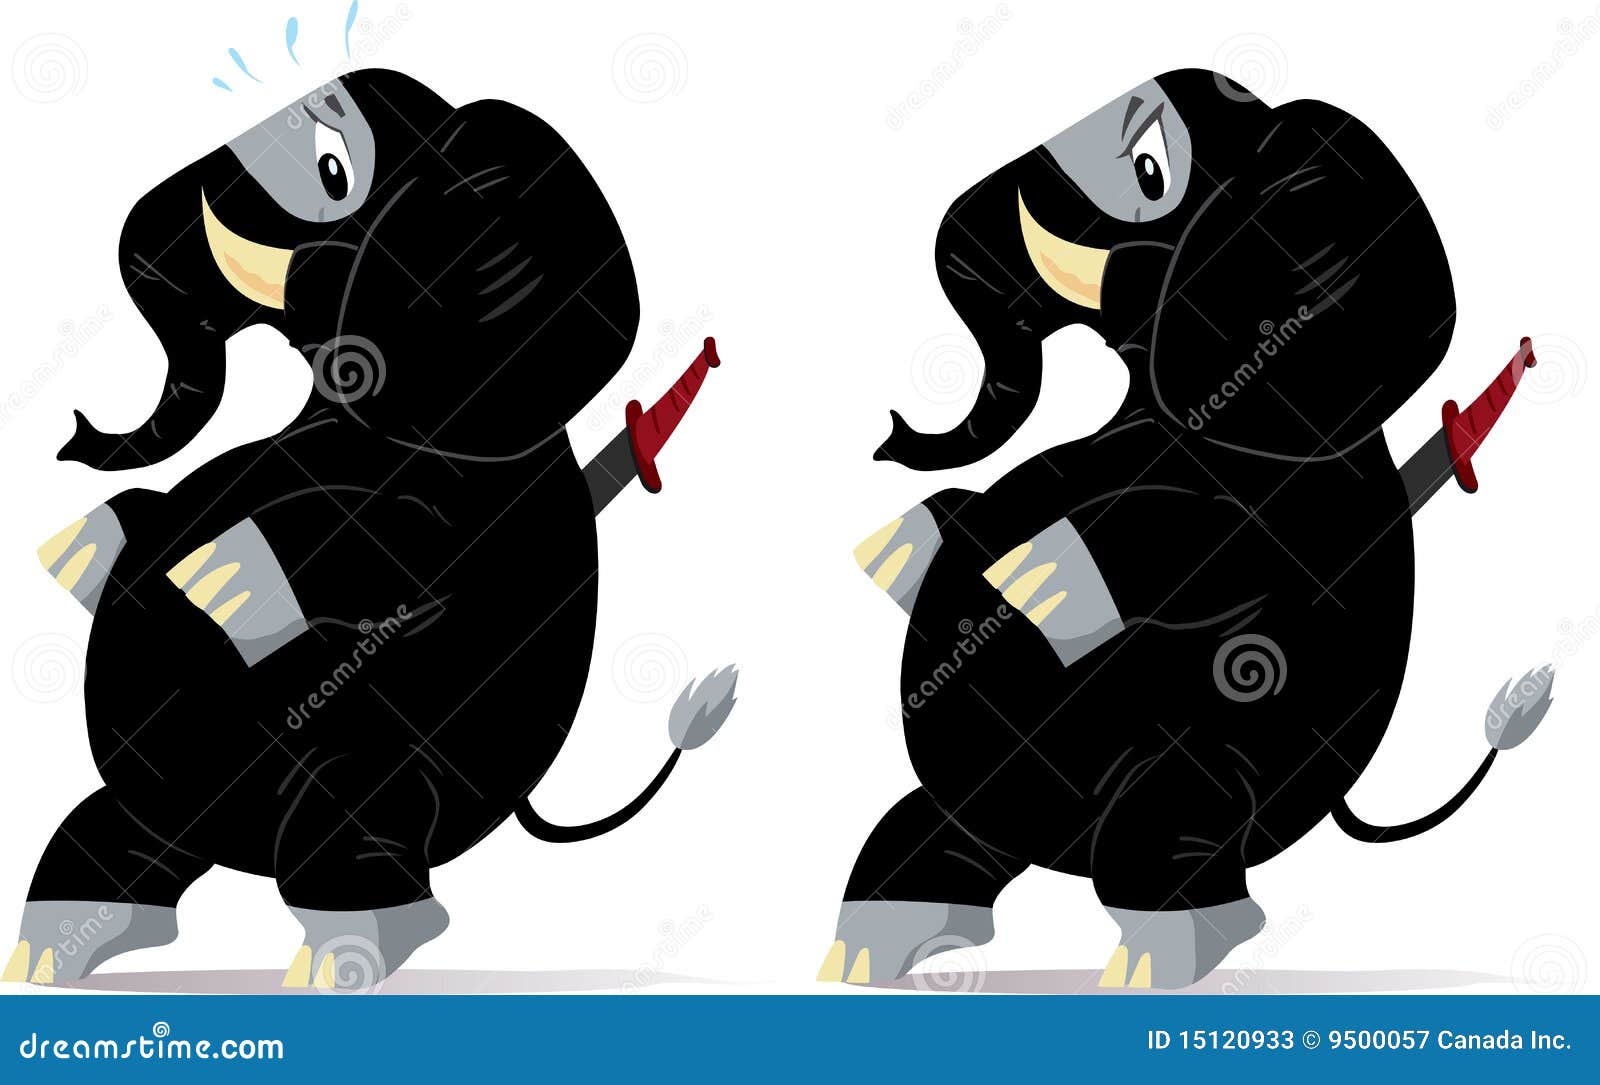 rubacchiando-elefante-nervoso-di-ninja-15120933